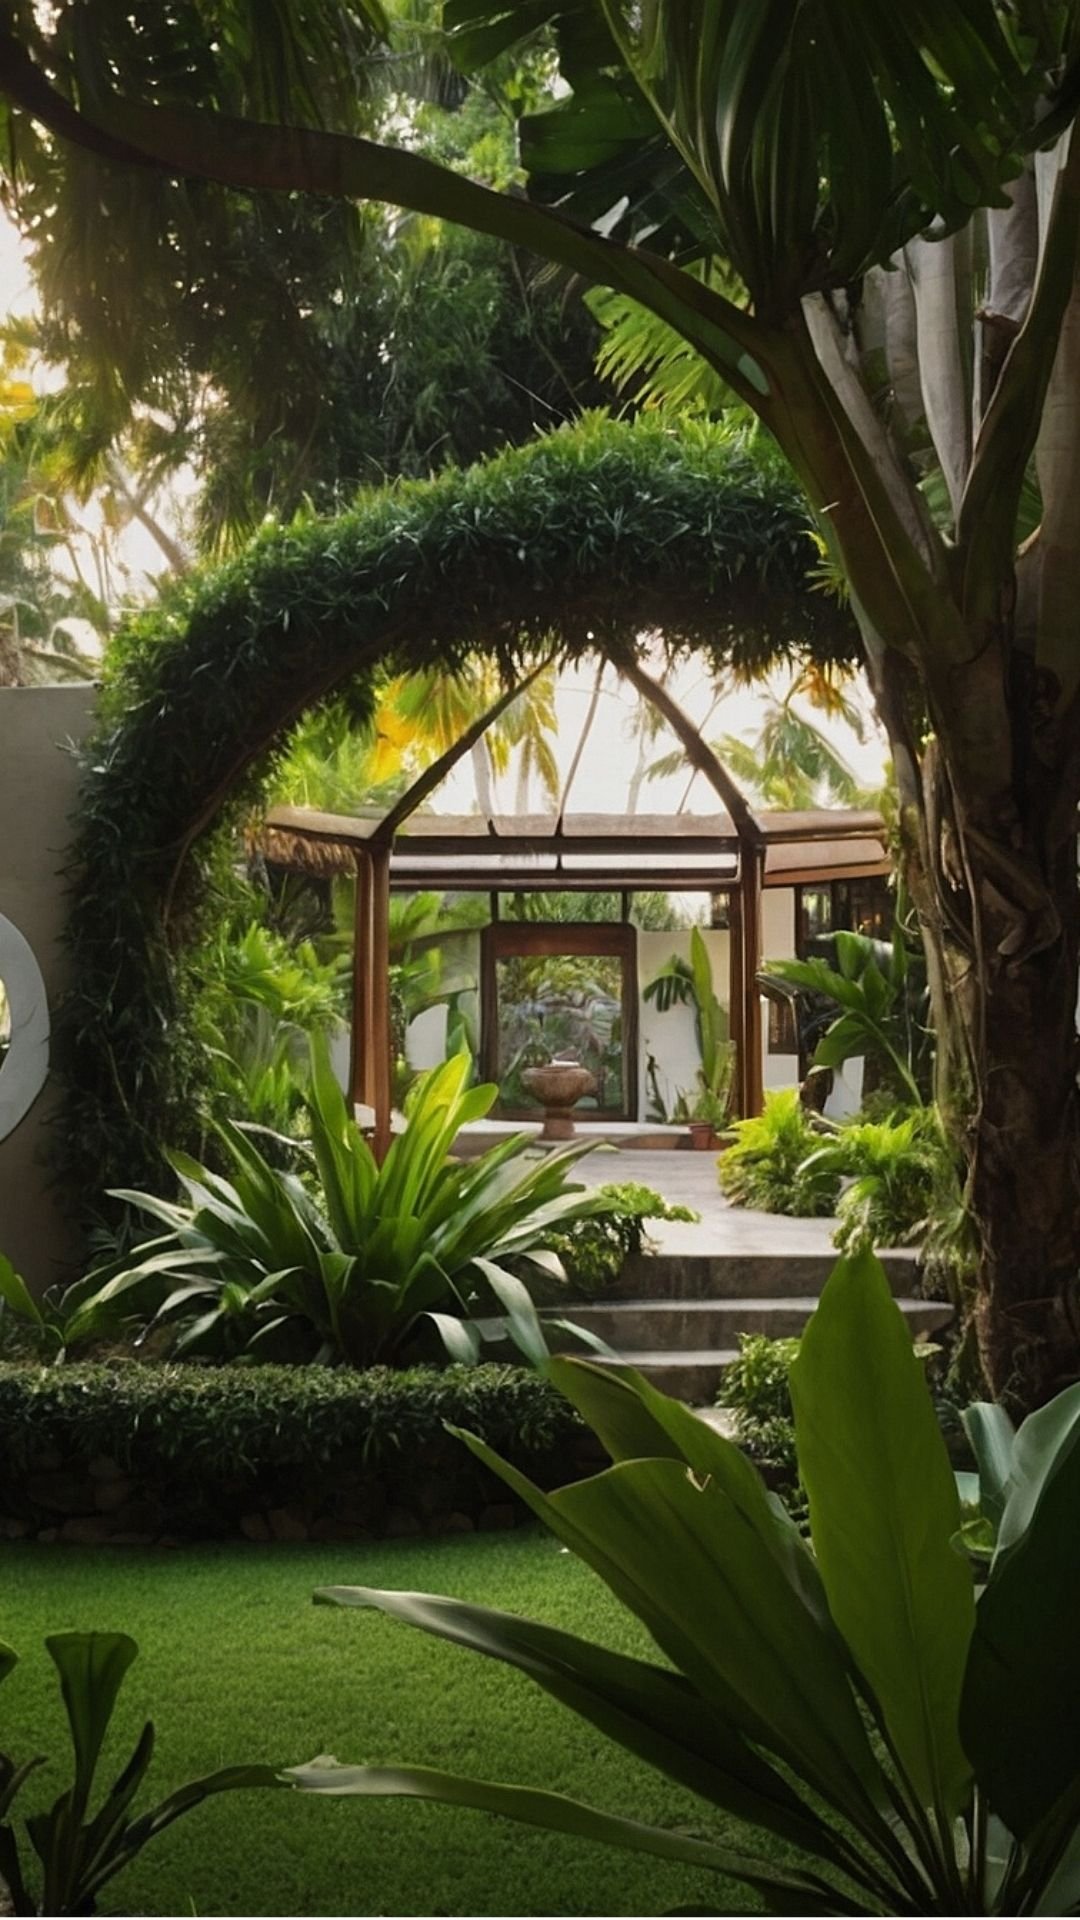 Green Archway: Lush Tropical Garden Entrance